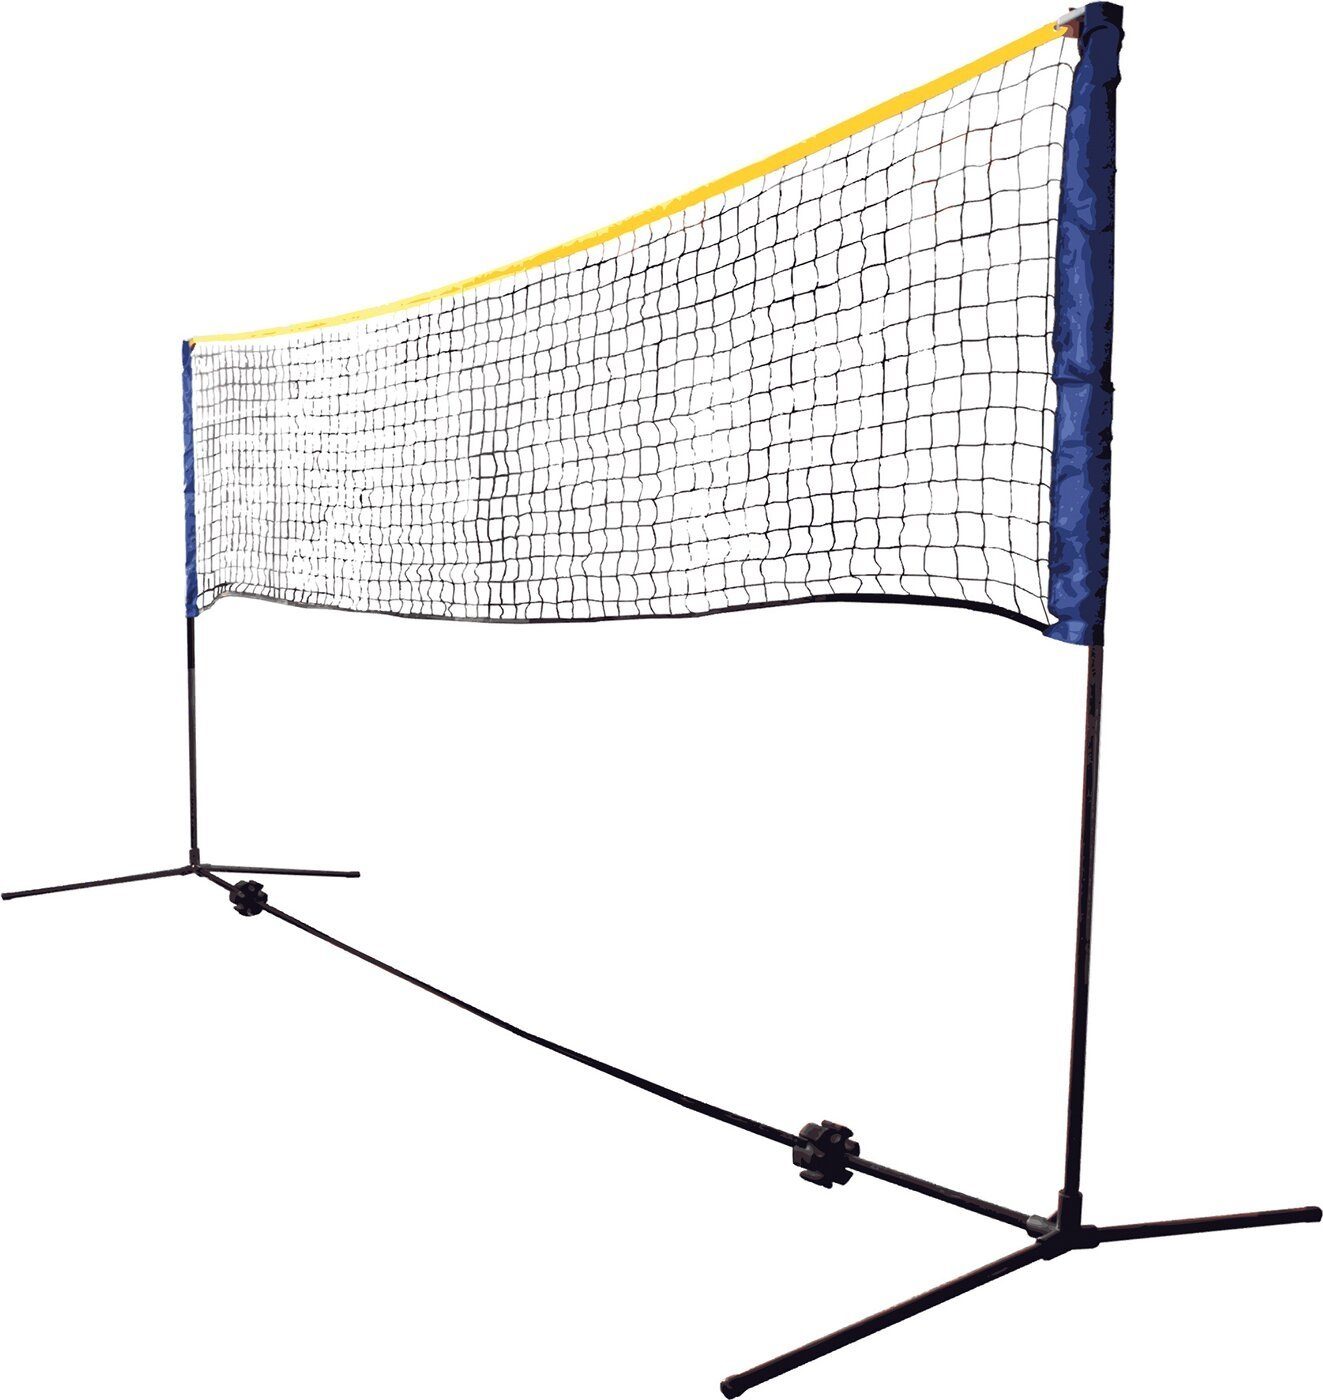 Badmintonnetz Tragetasc Net Talbot-Torro FUNSPORT Set Combi in